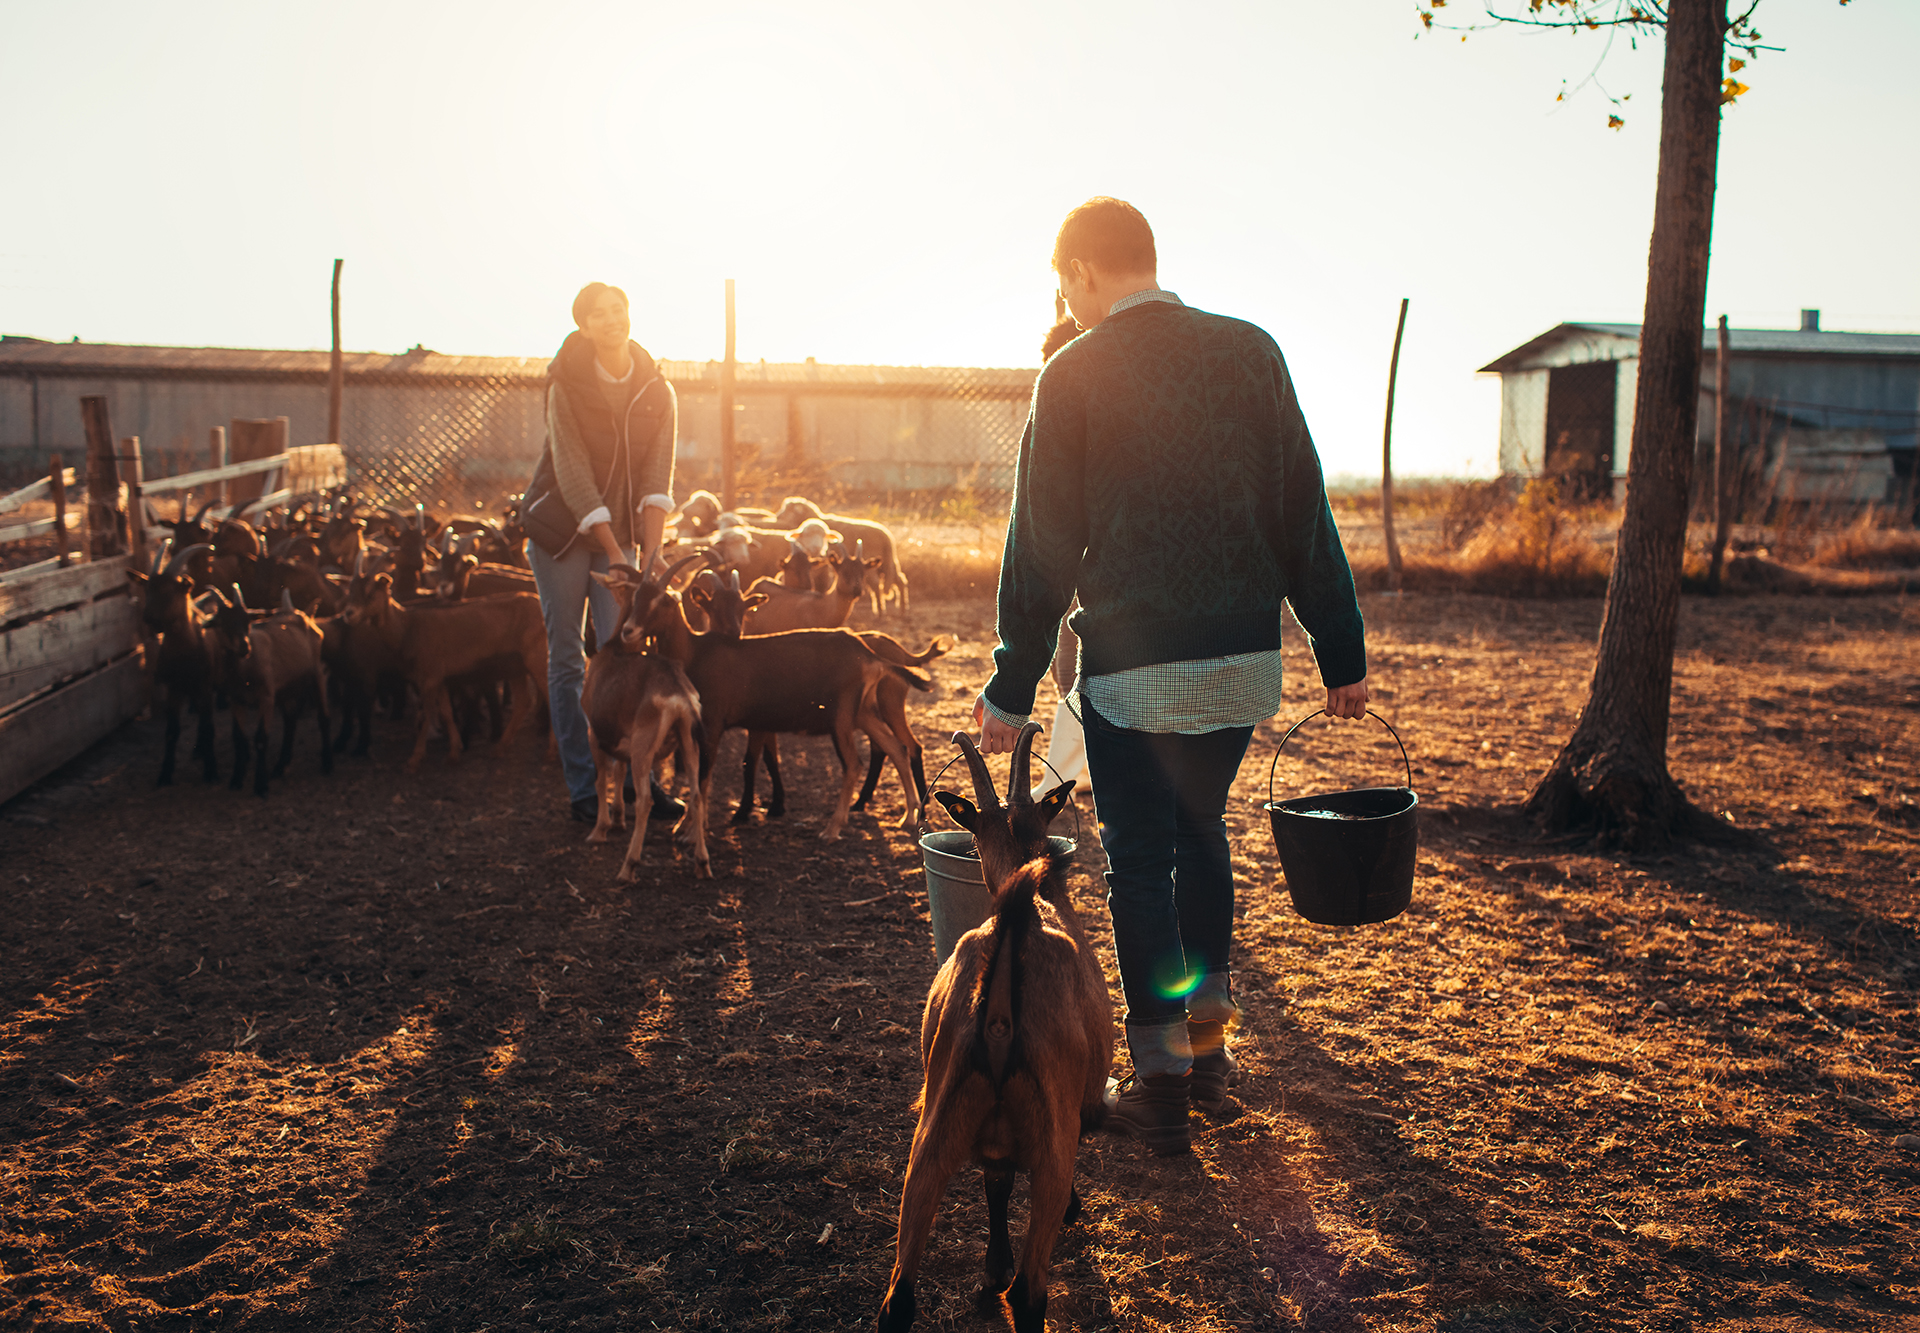 A rural goat farm